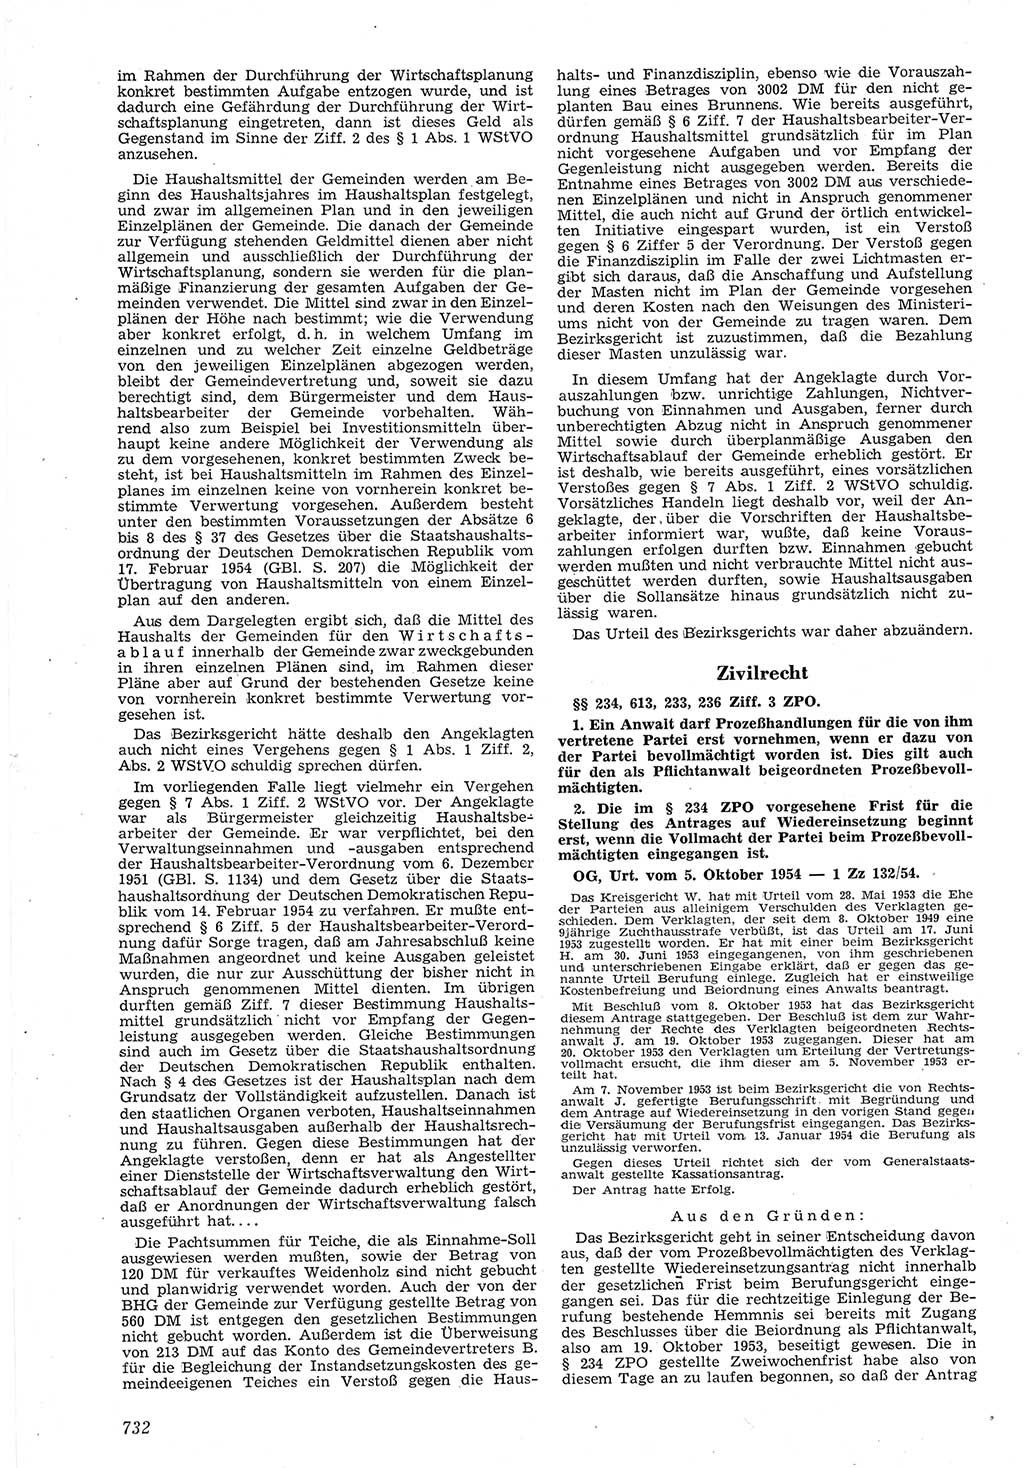 Neue Justiz (NJ), Zeitschrift für Recht und Rechtswissenschaft [Deutsche Demokratische Republik (DDR)], 8. Jahrgang 1954, Seite 732 (NJ DDR 1954, S. 732)